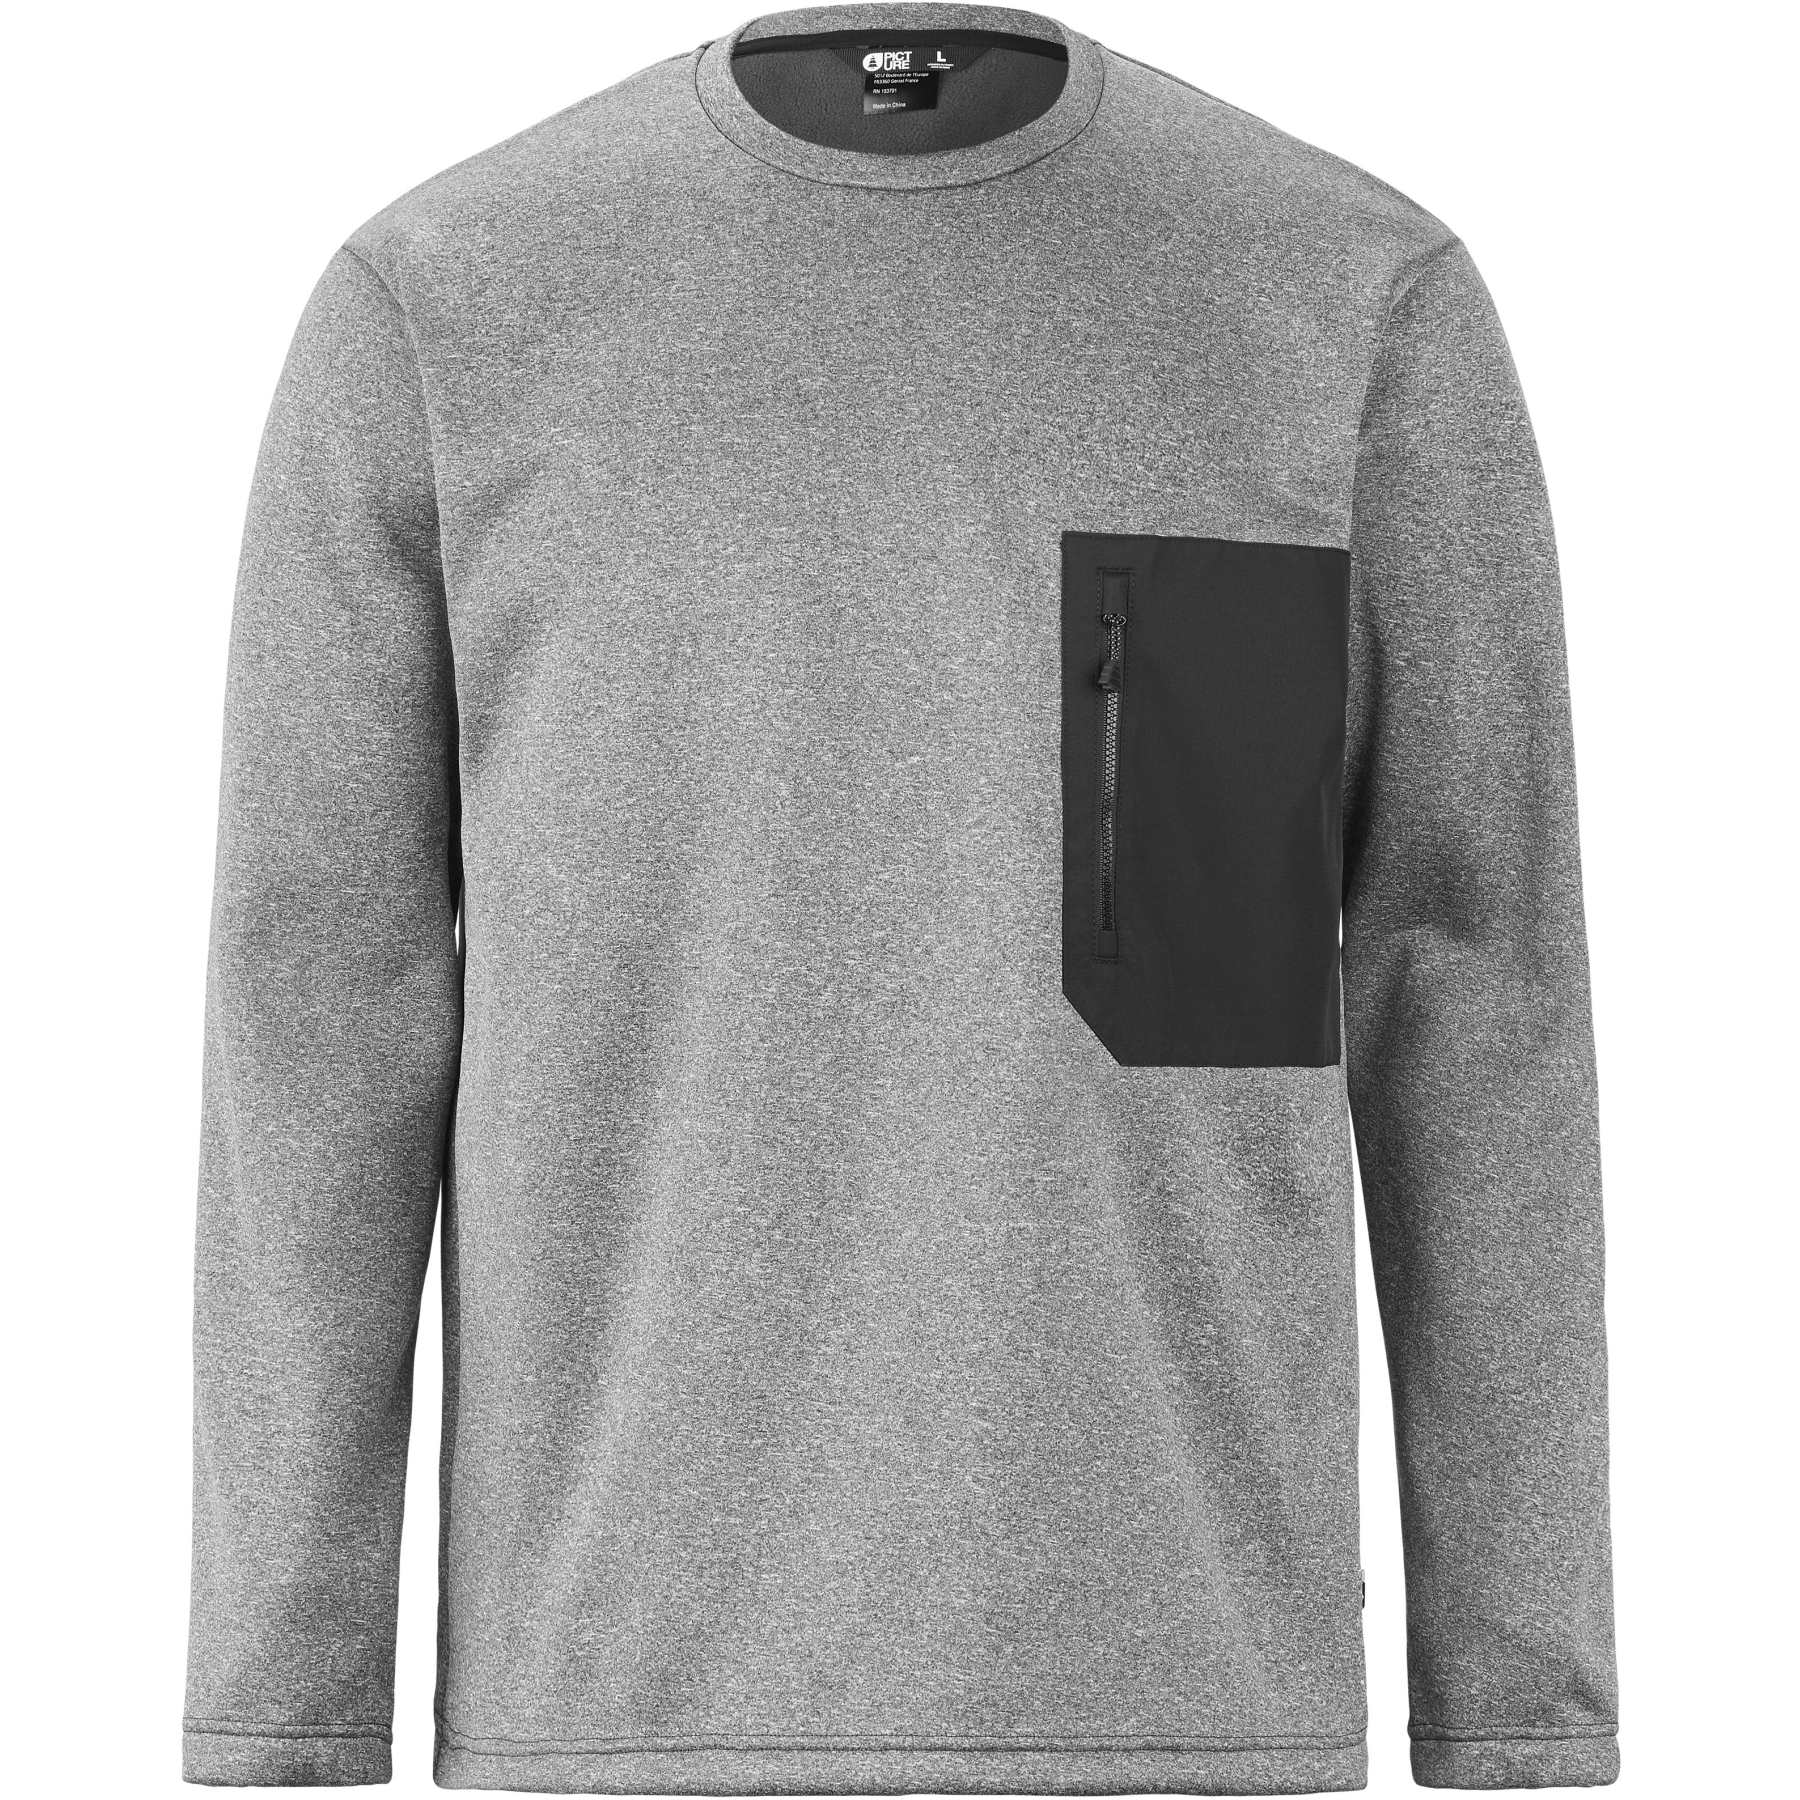 Produktbild von Picture Park Tech Sweatshirt - Grey Melange